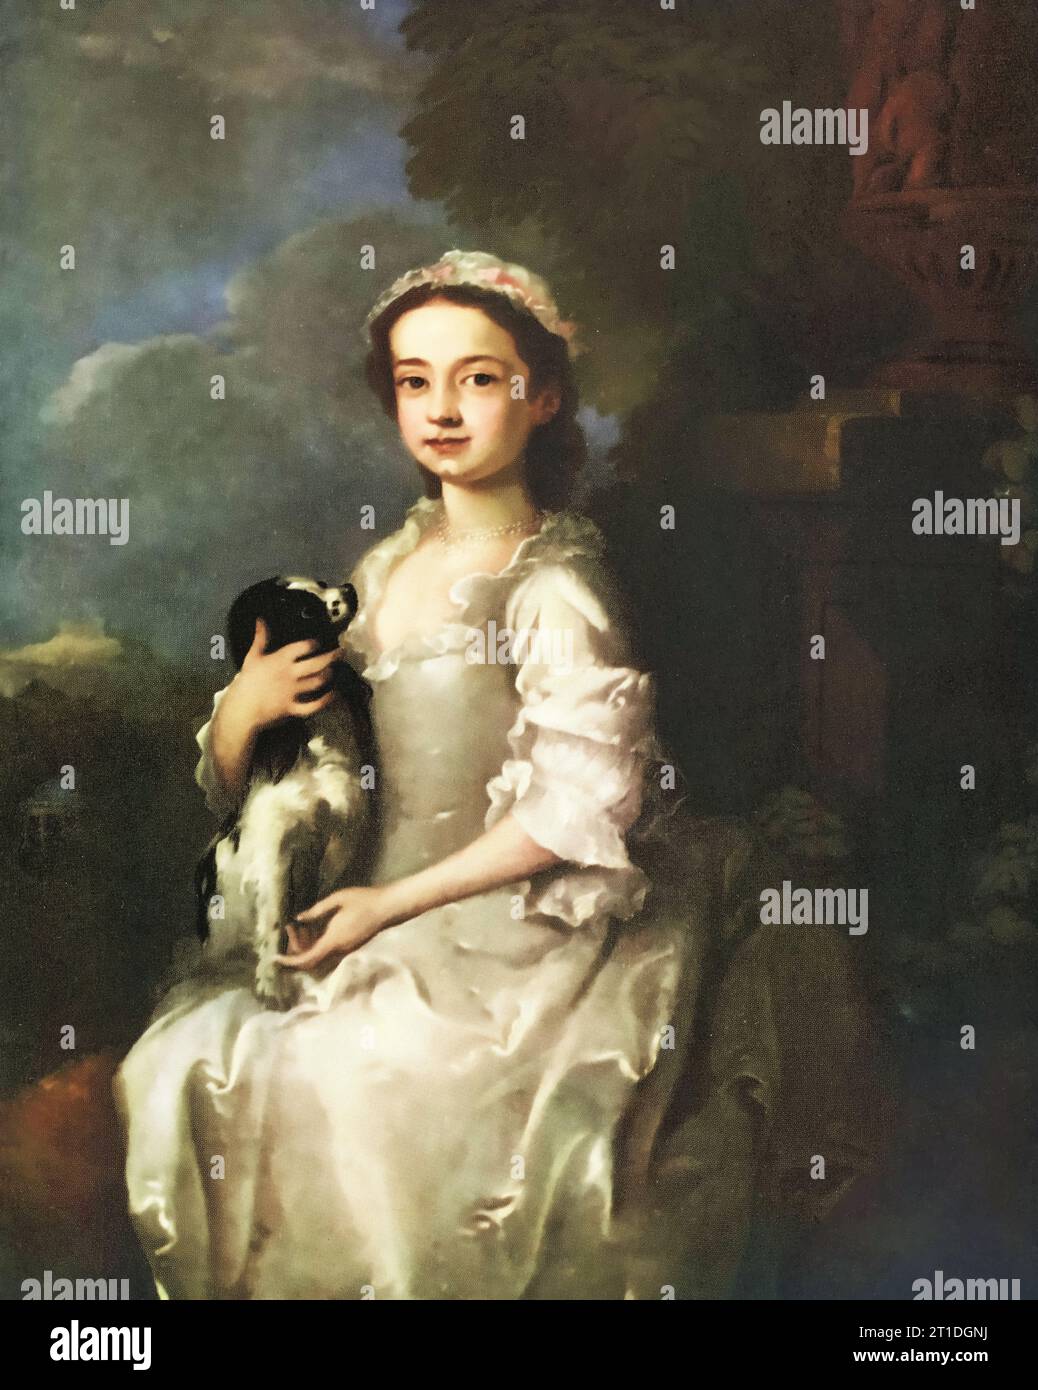 Ritratto di una giovane ragazza, c1750. Circolo di William Hogarth (1697-1764). Un ritratto del XVIII secolo di una giovane ragazza, che indossa un vestito bianco, con un re Charles spaniel seduto in grembo. Foto Stock